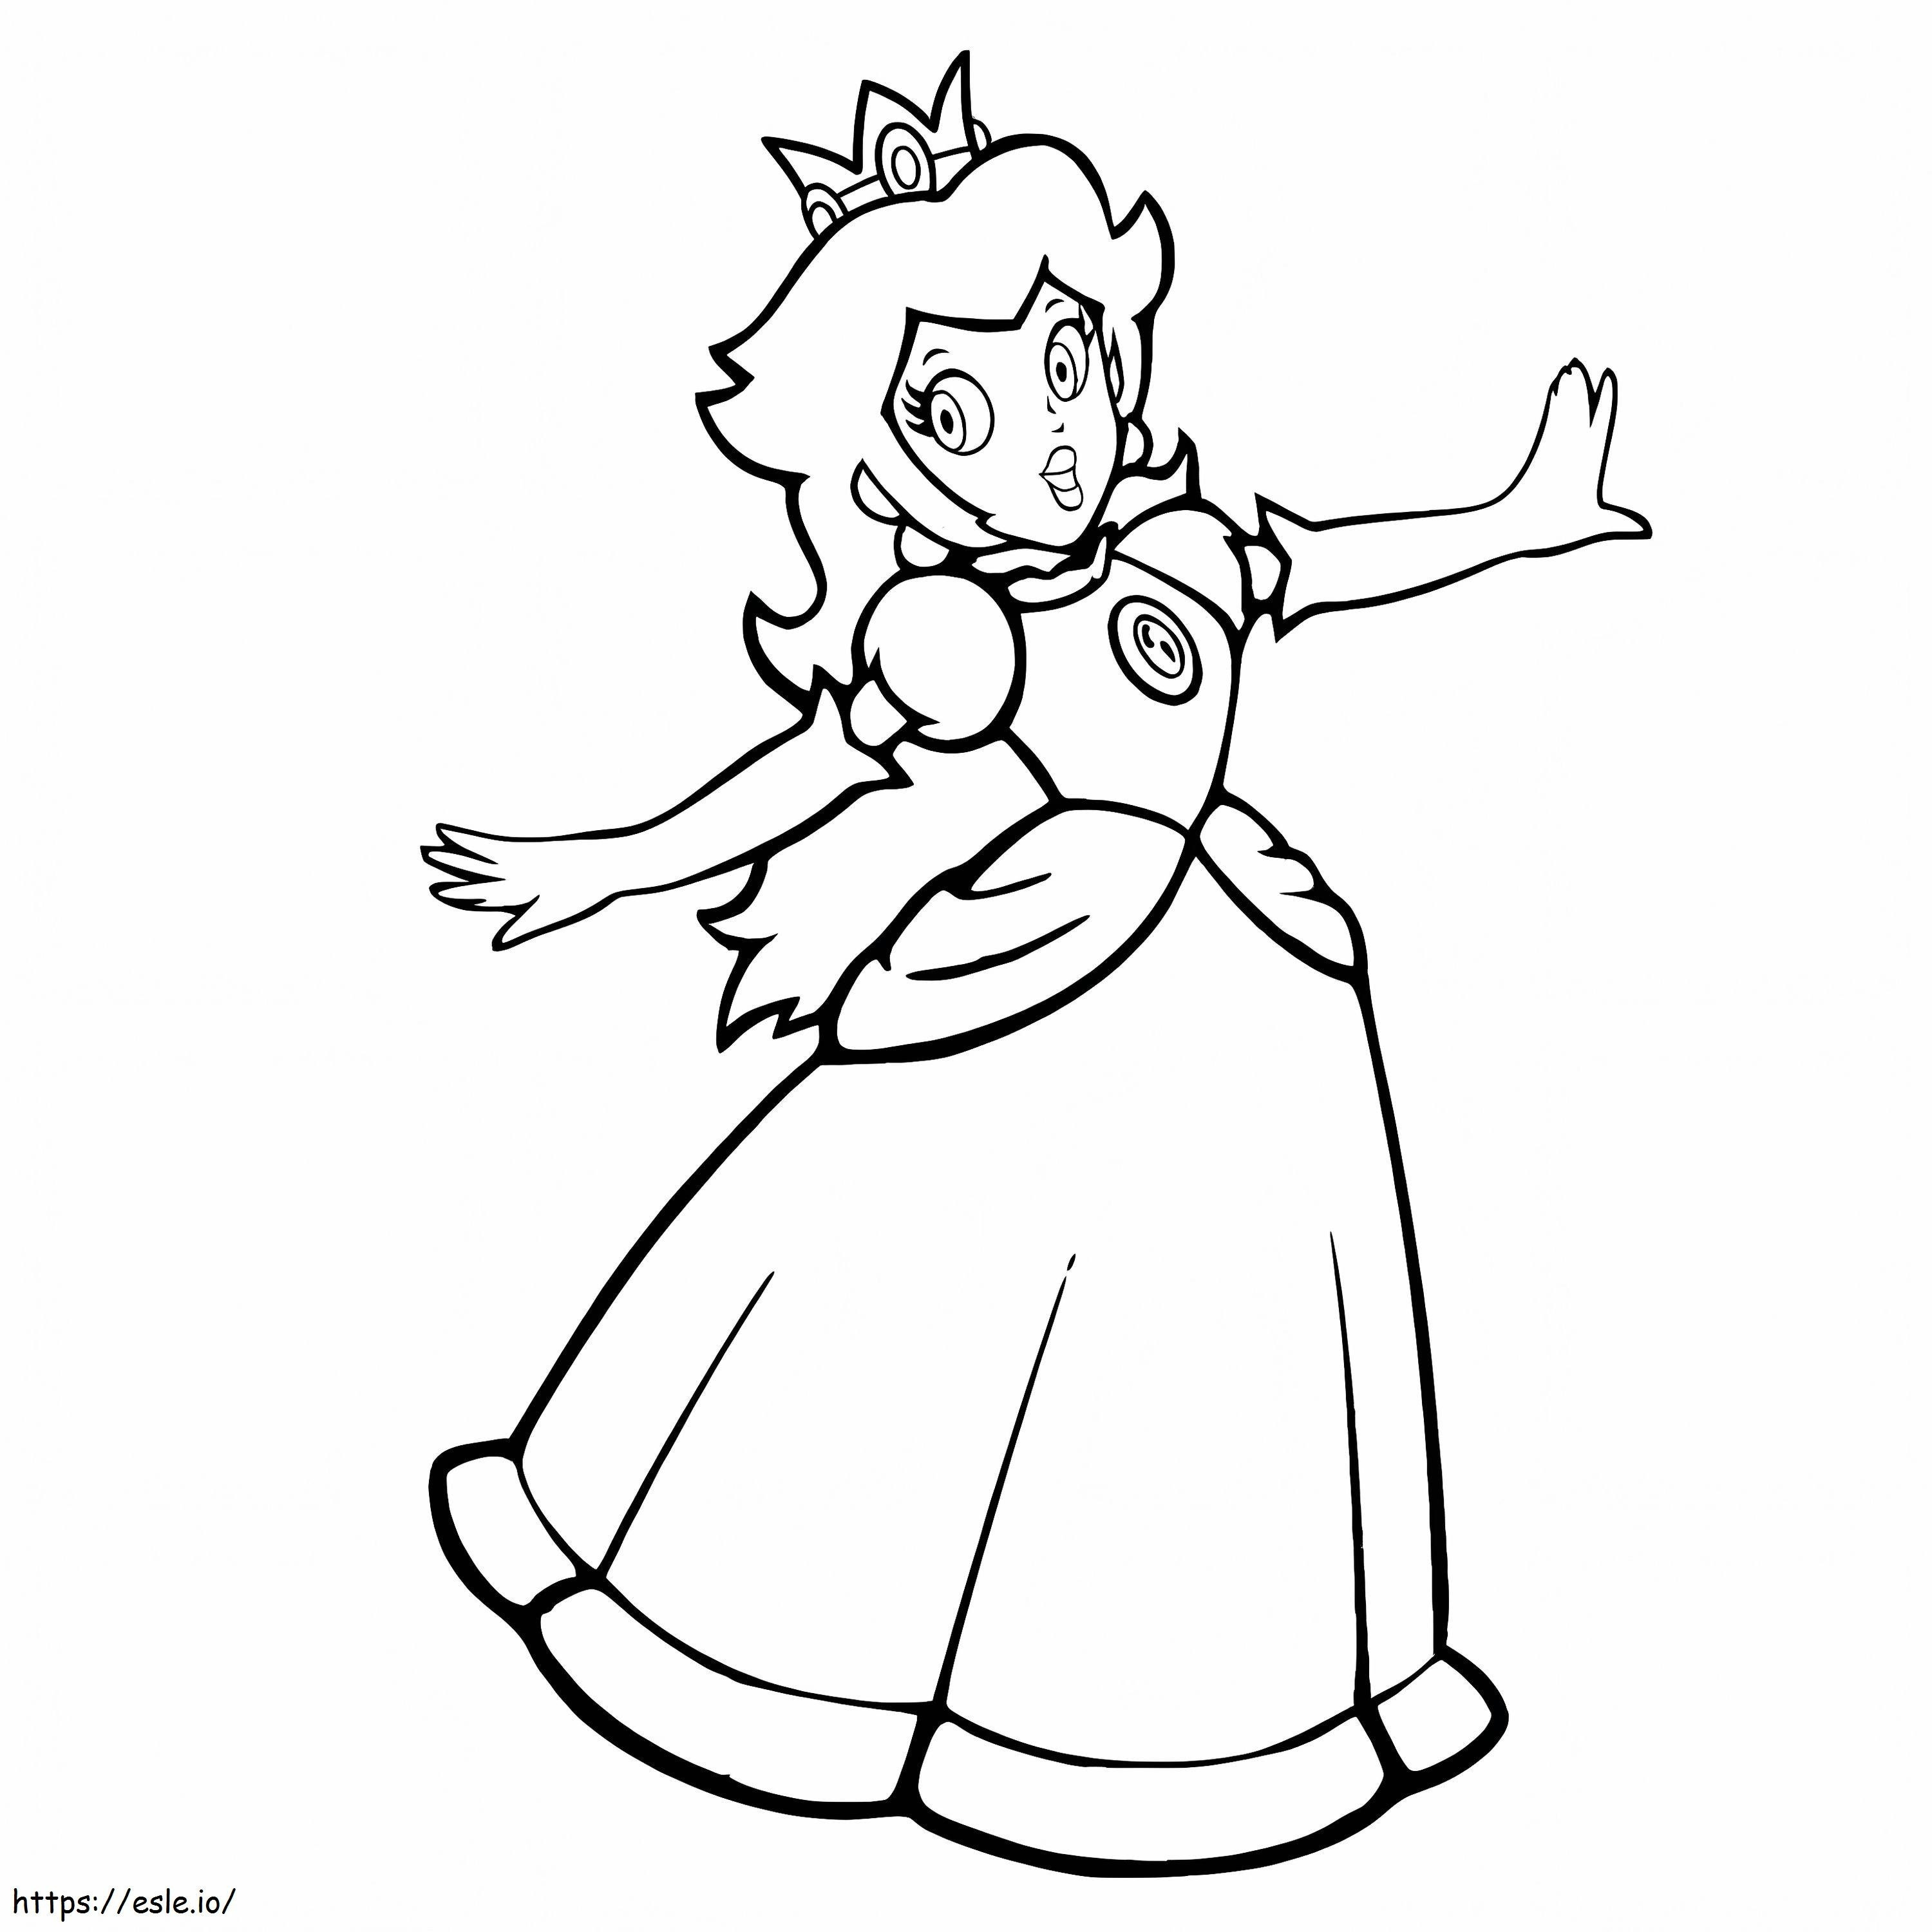 Prinzessin Peach glücklich ausmalbilder